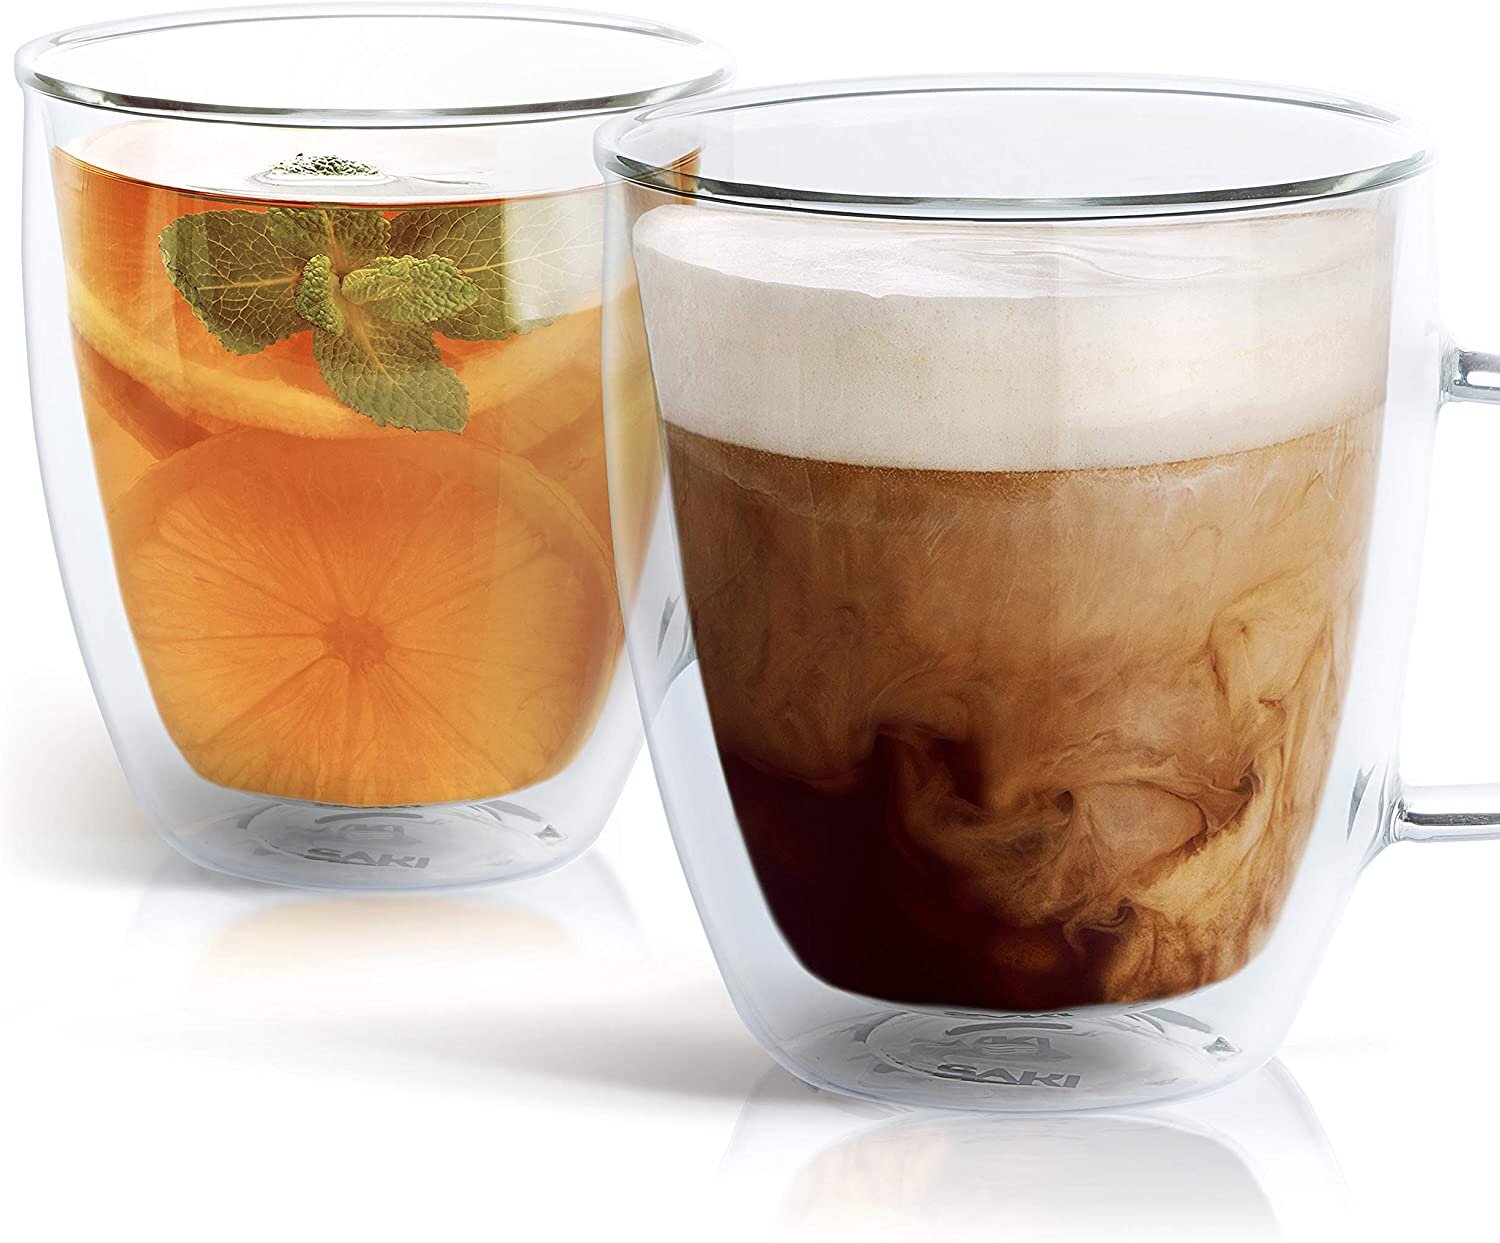 Luigi Bormioli Thermic Borosilicate Double-Wall Insulated Coffee Mugs, Clear, 10.25 oz - 2 pack